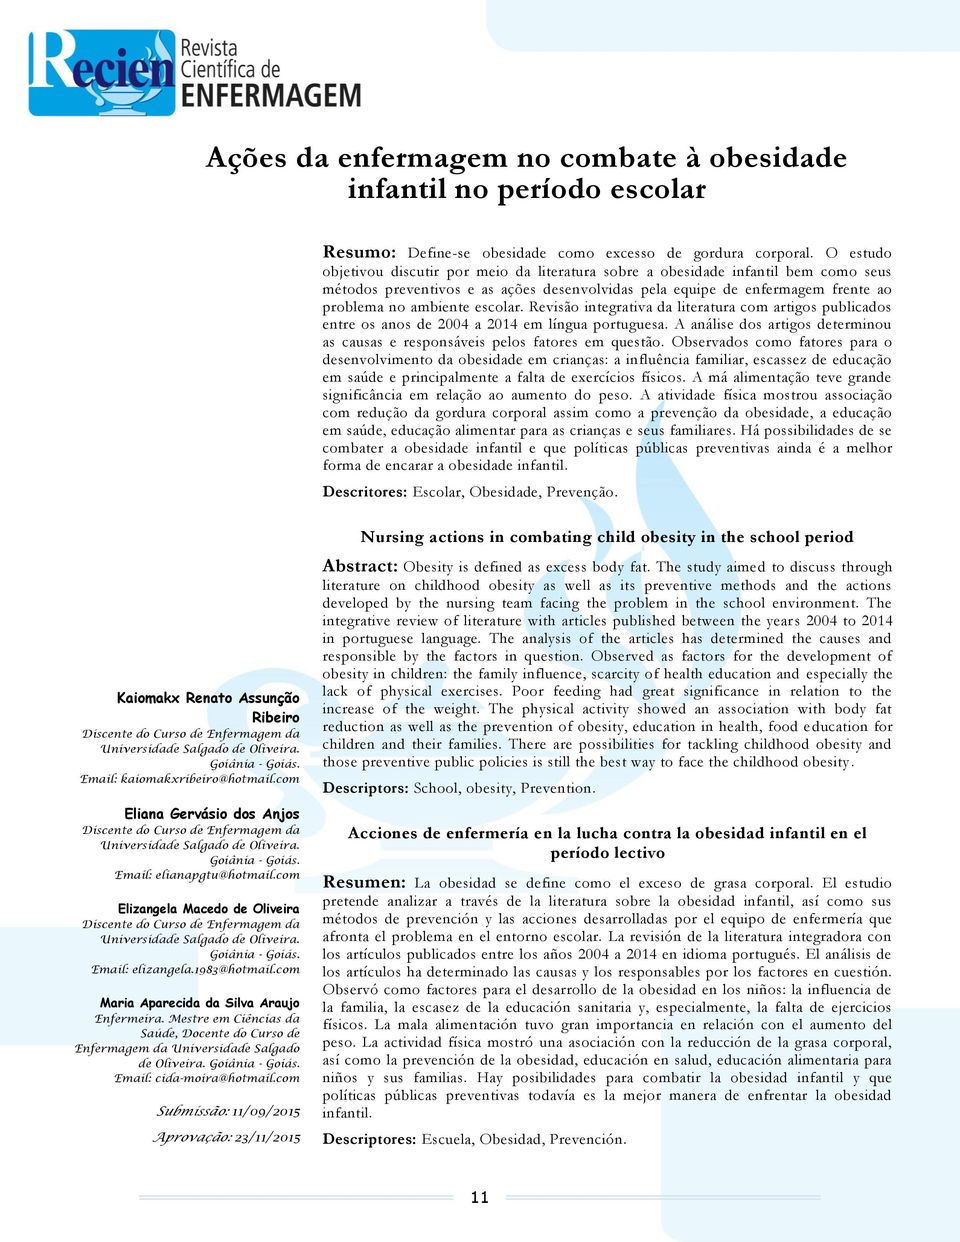 escolar. Revisão integrativa da literatura com artigos publicados entre os anos de 2004 a 2014 em língua portuguesa. A análise dos artigos determinou as causas e responsáveis pelos fatores em questão.